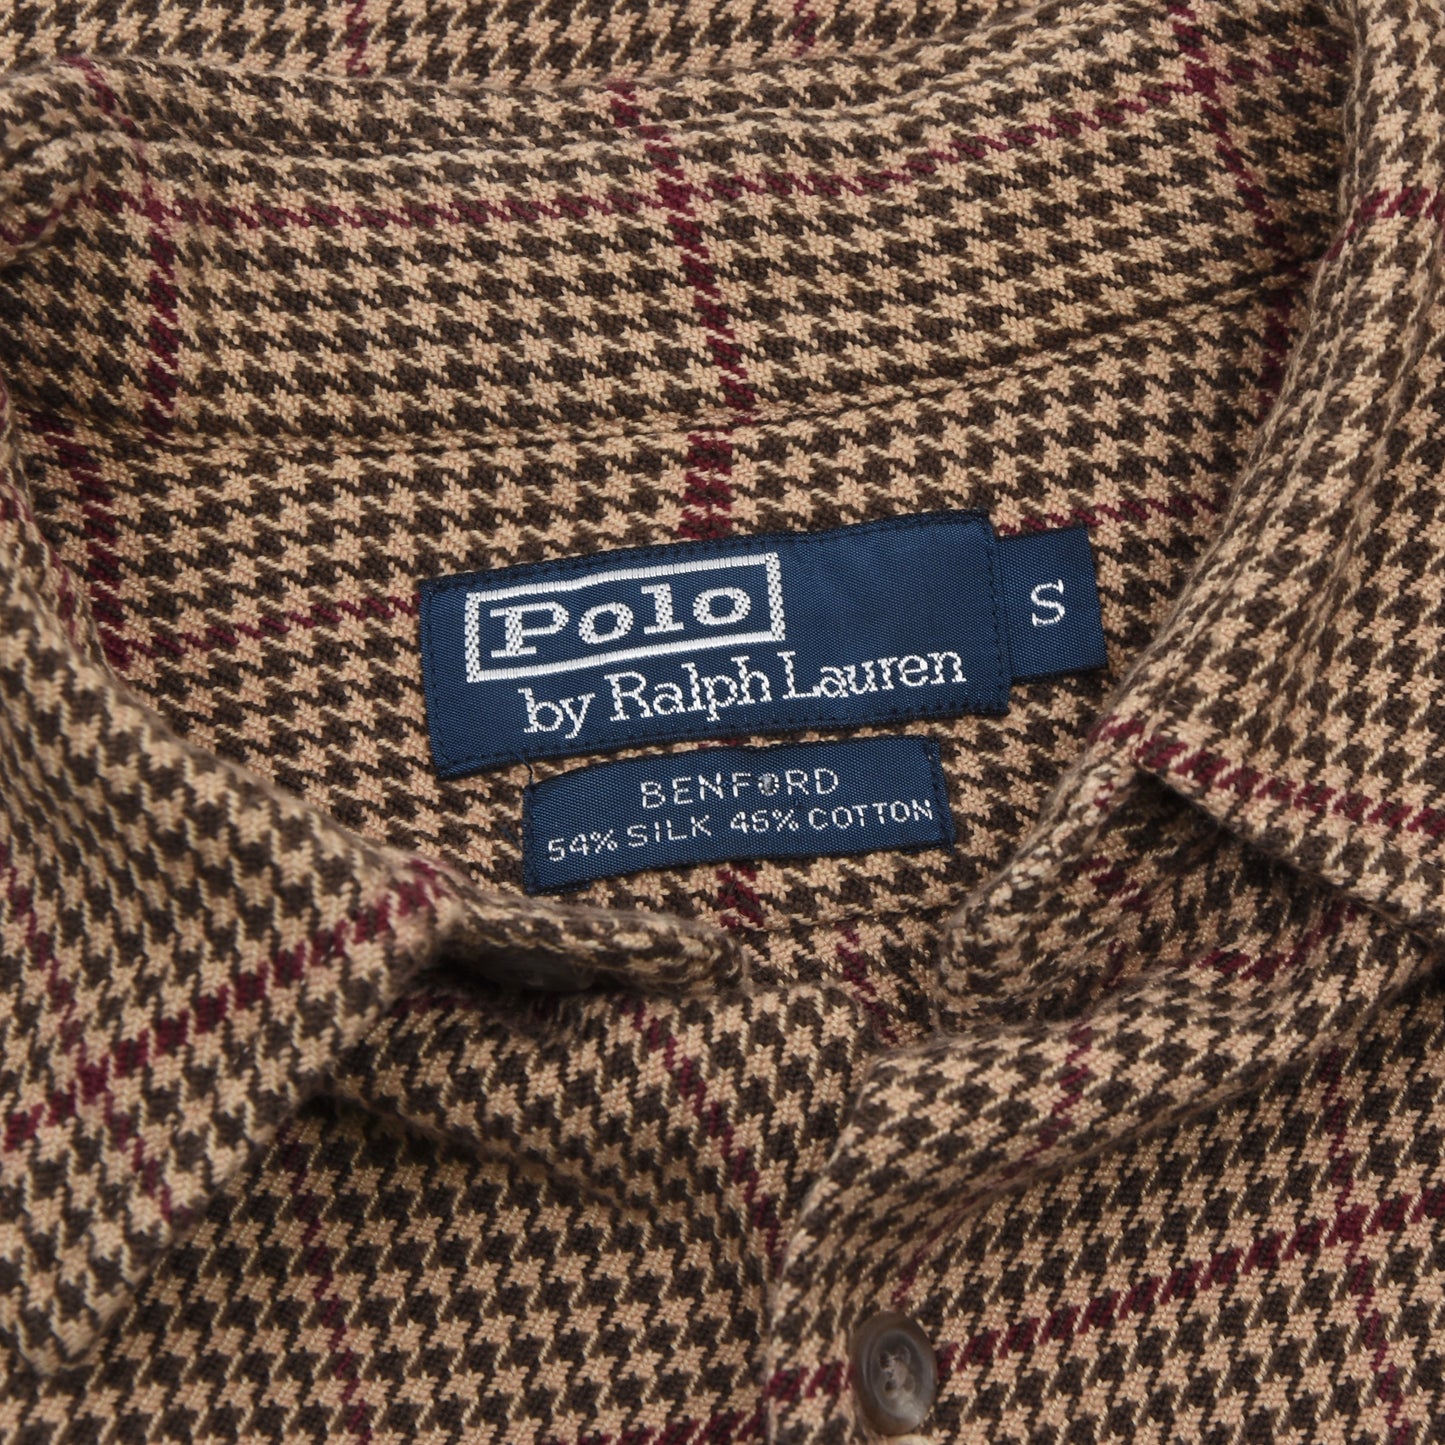 Polo Ralph Lauren Silk & Cotton Shirt Size S - Houndstooth